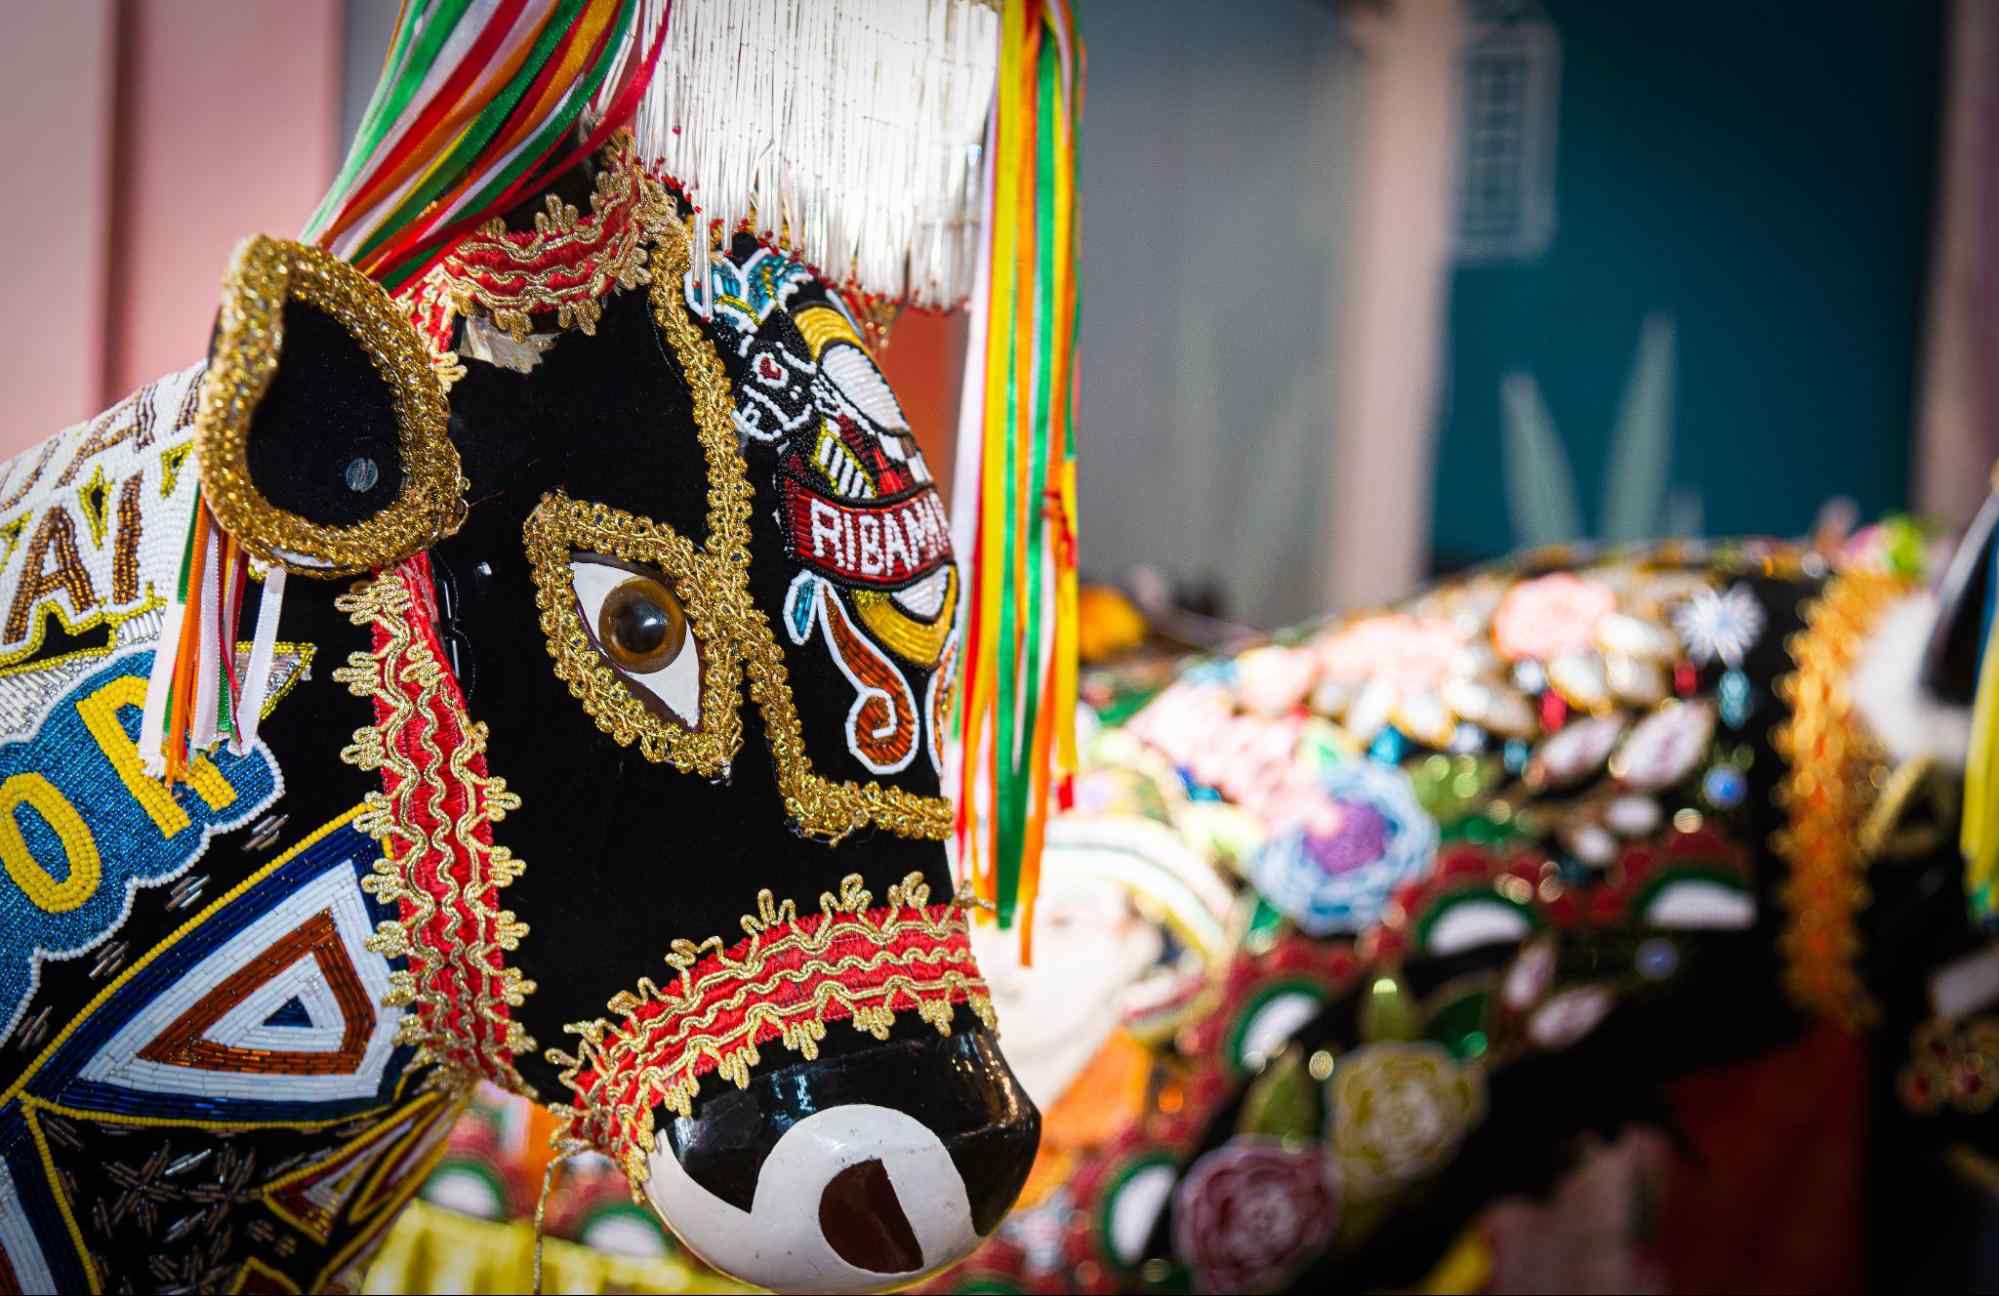 Esculturas de papelão usadas nas celebrações de bumba meu boi, no Maranhão. Elas representam bois ricamente enfeitados com lantejoulas, fitas coloridas e outros adereços